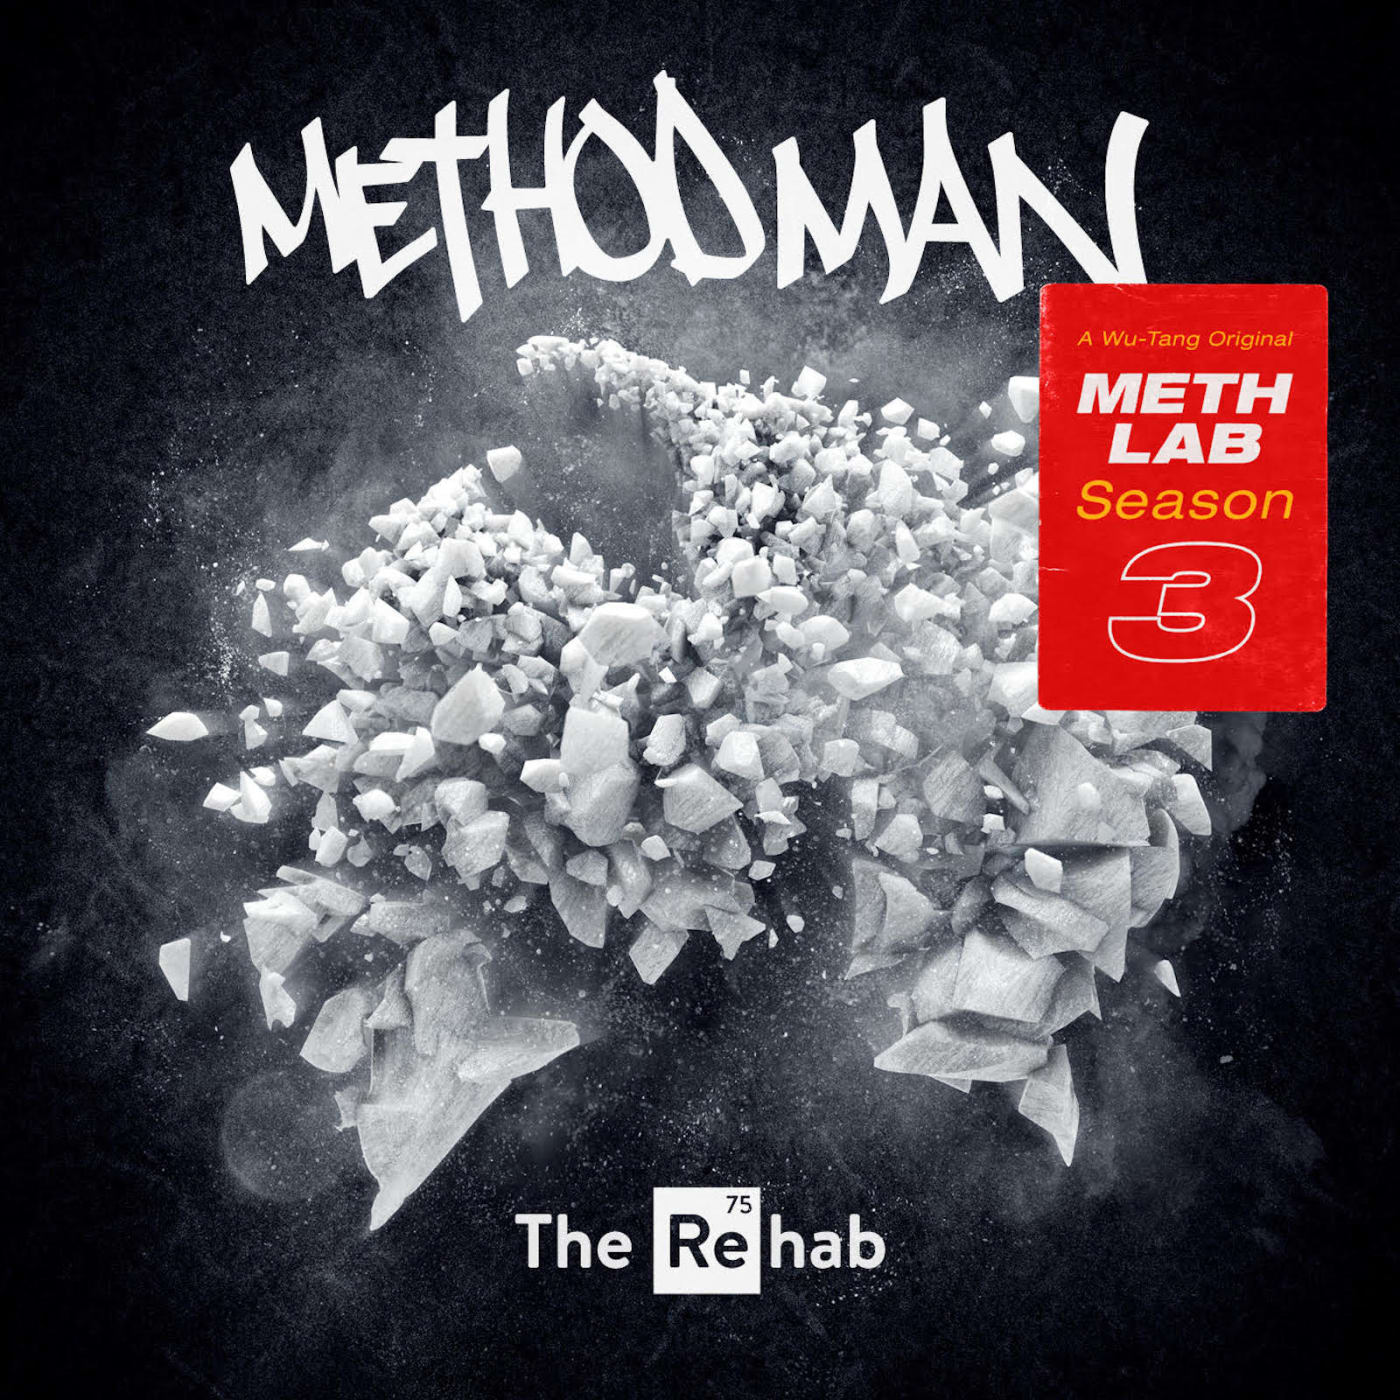 Method Man's new album 'Meth Lab Season 3: The Rehab'